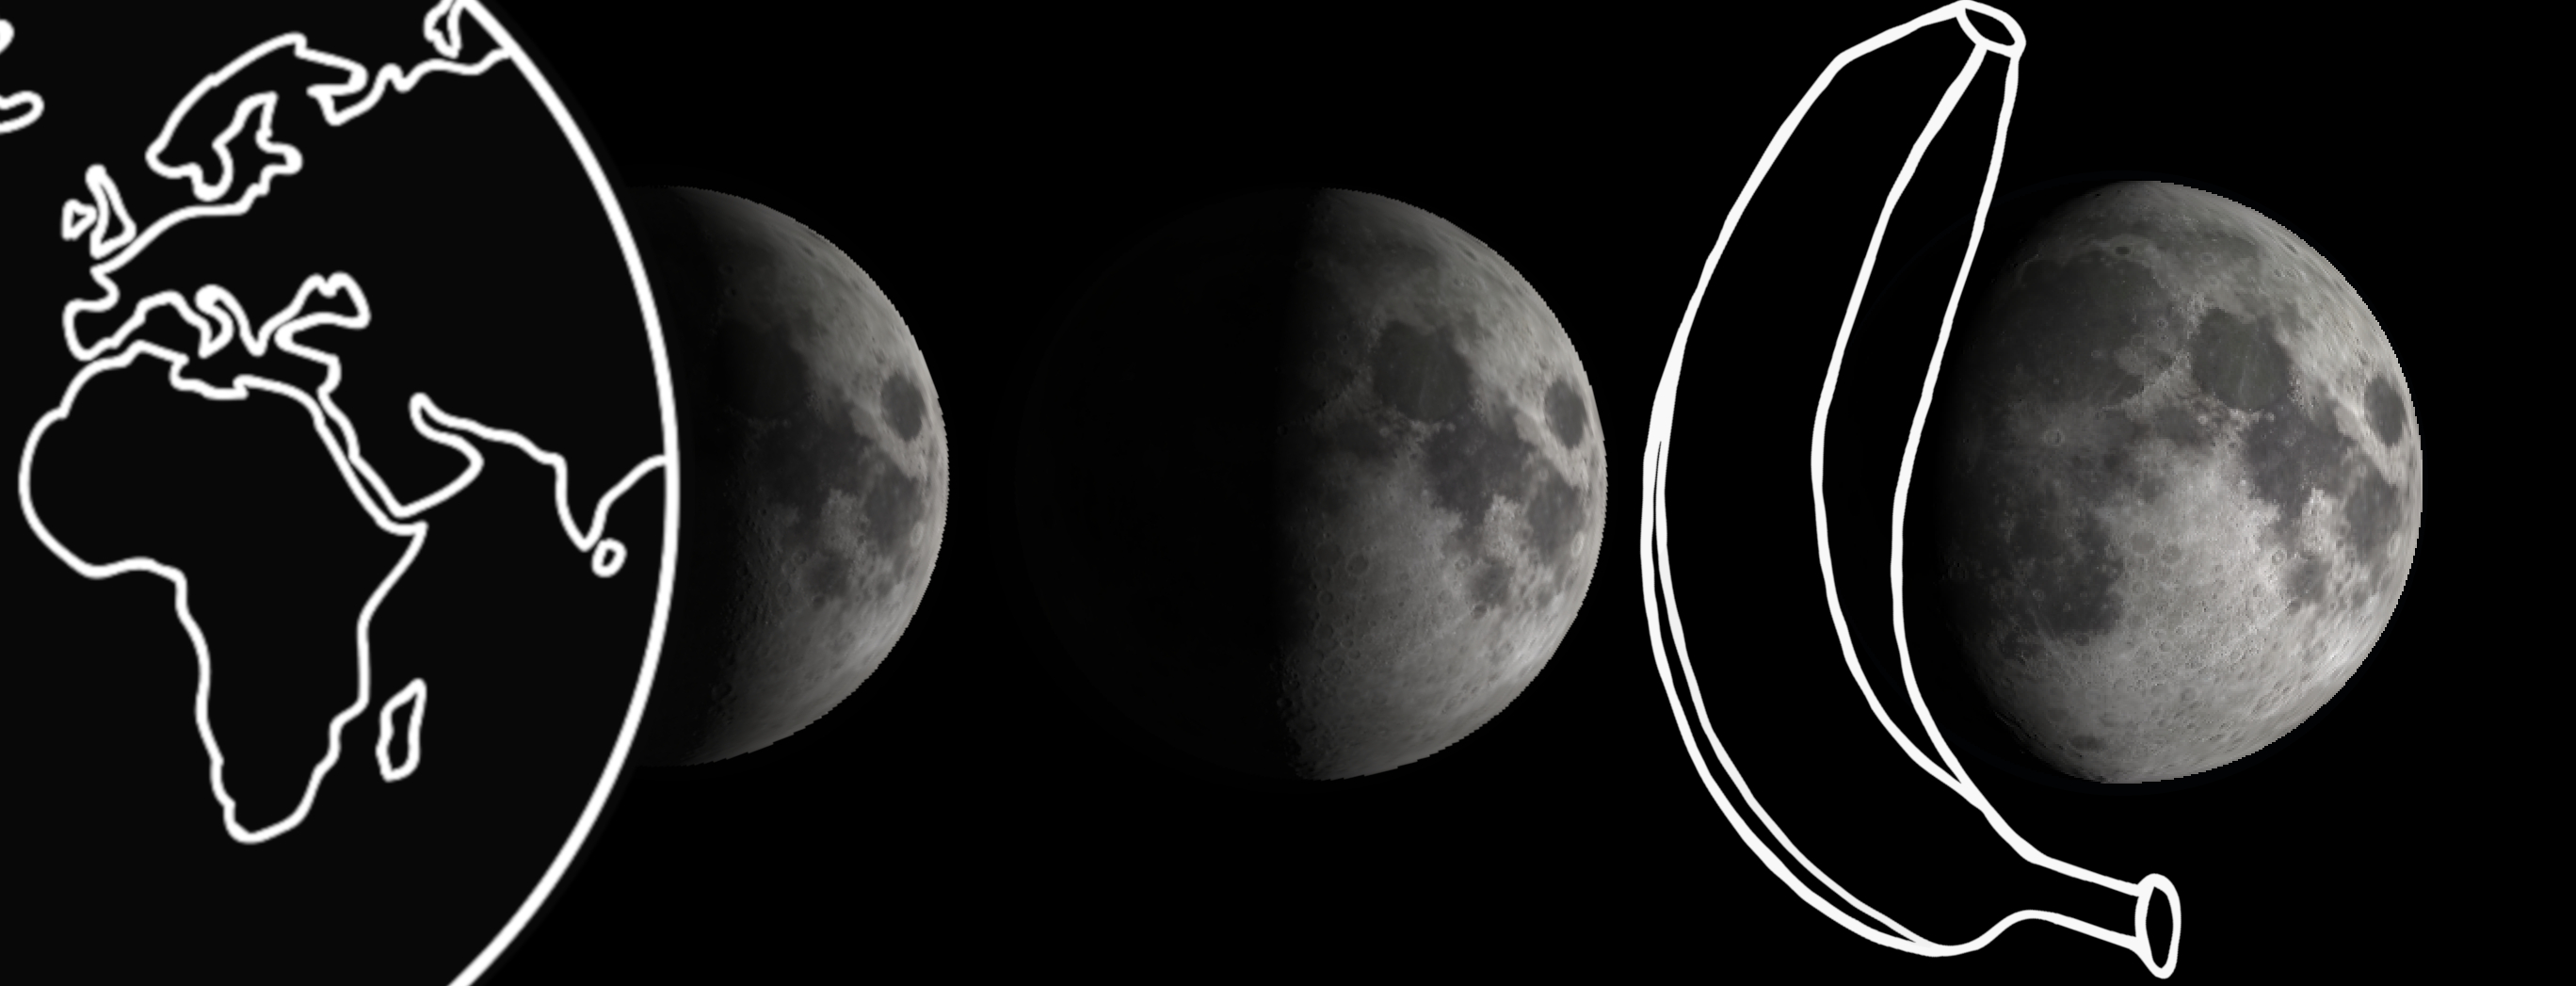 Ilustración de tres fases de la luna. (Daniel Brown)